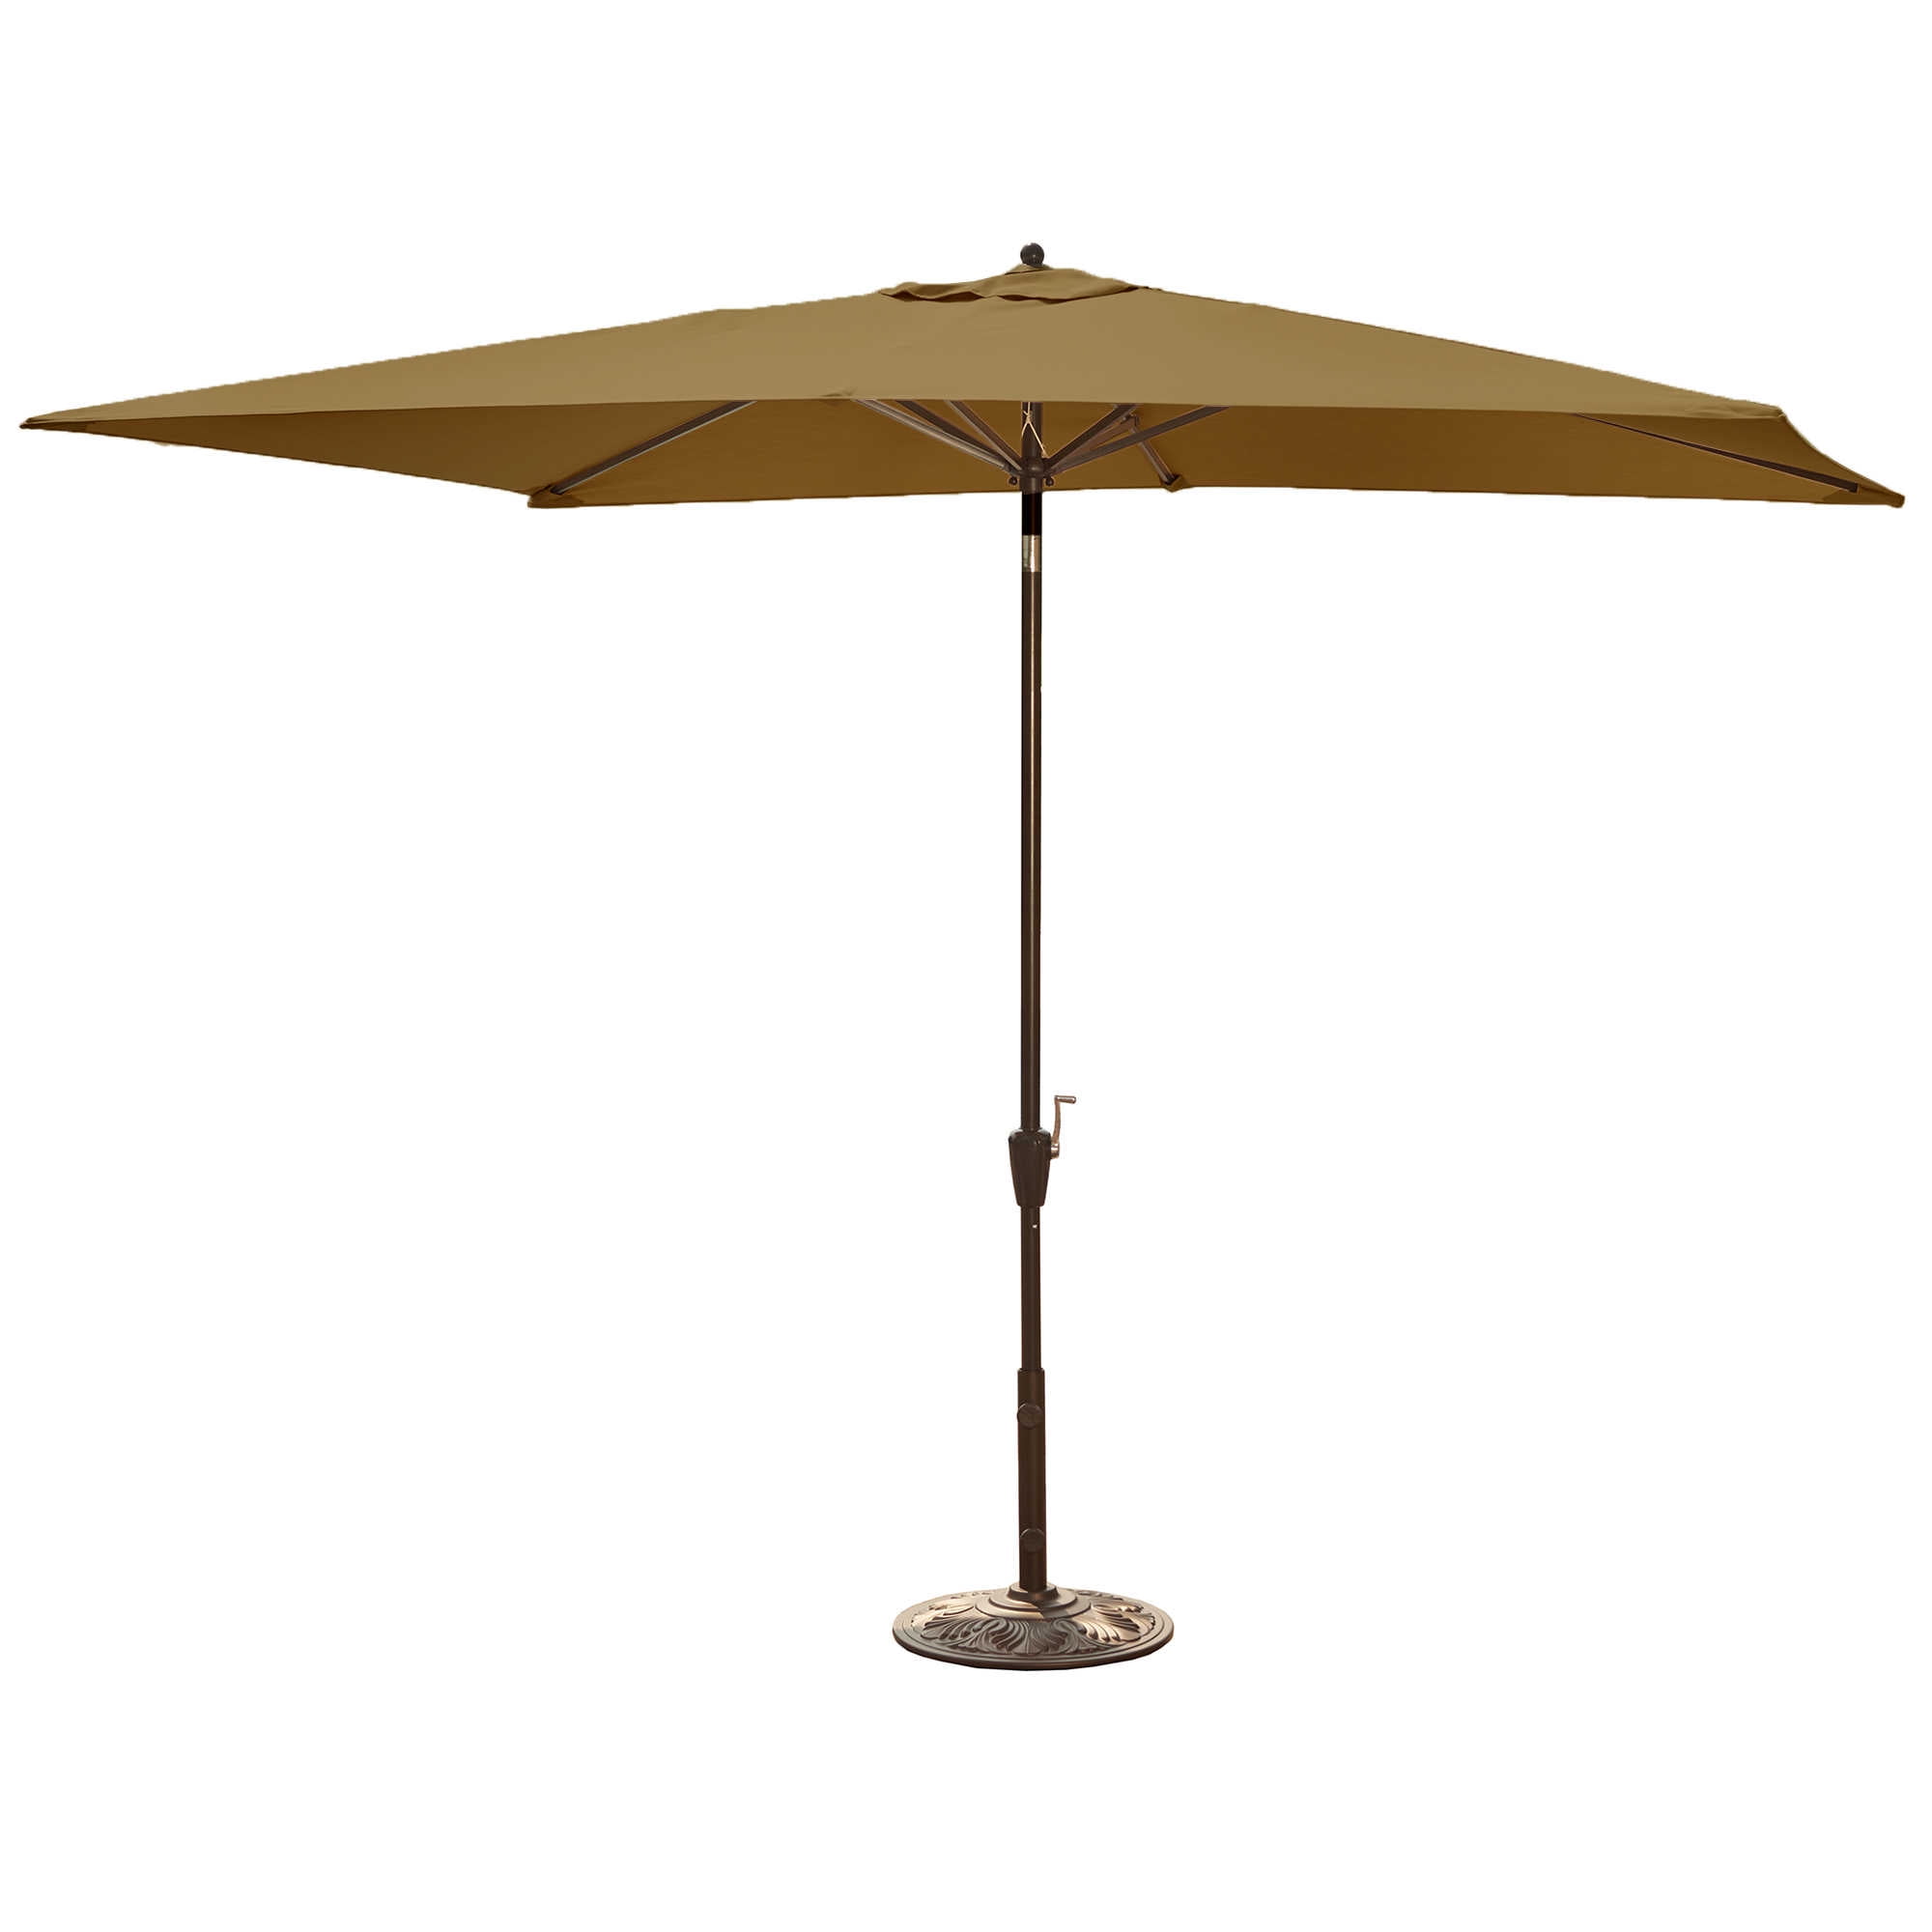 10 foot beach umbrella